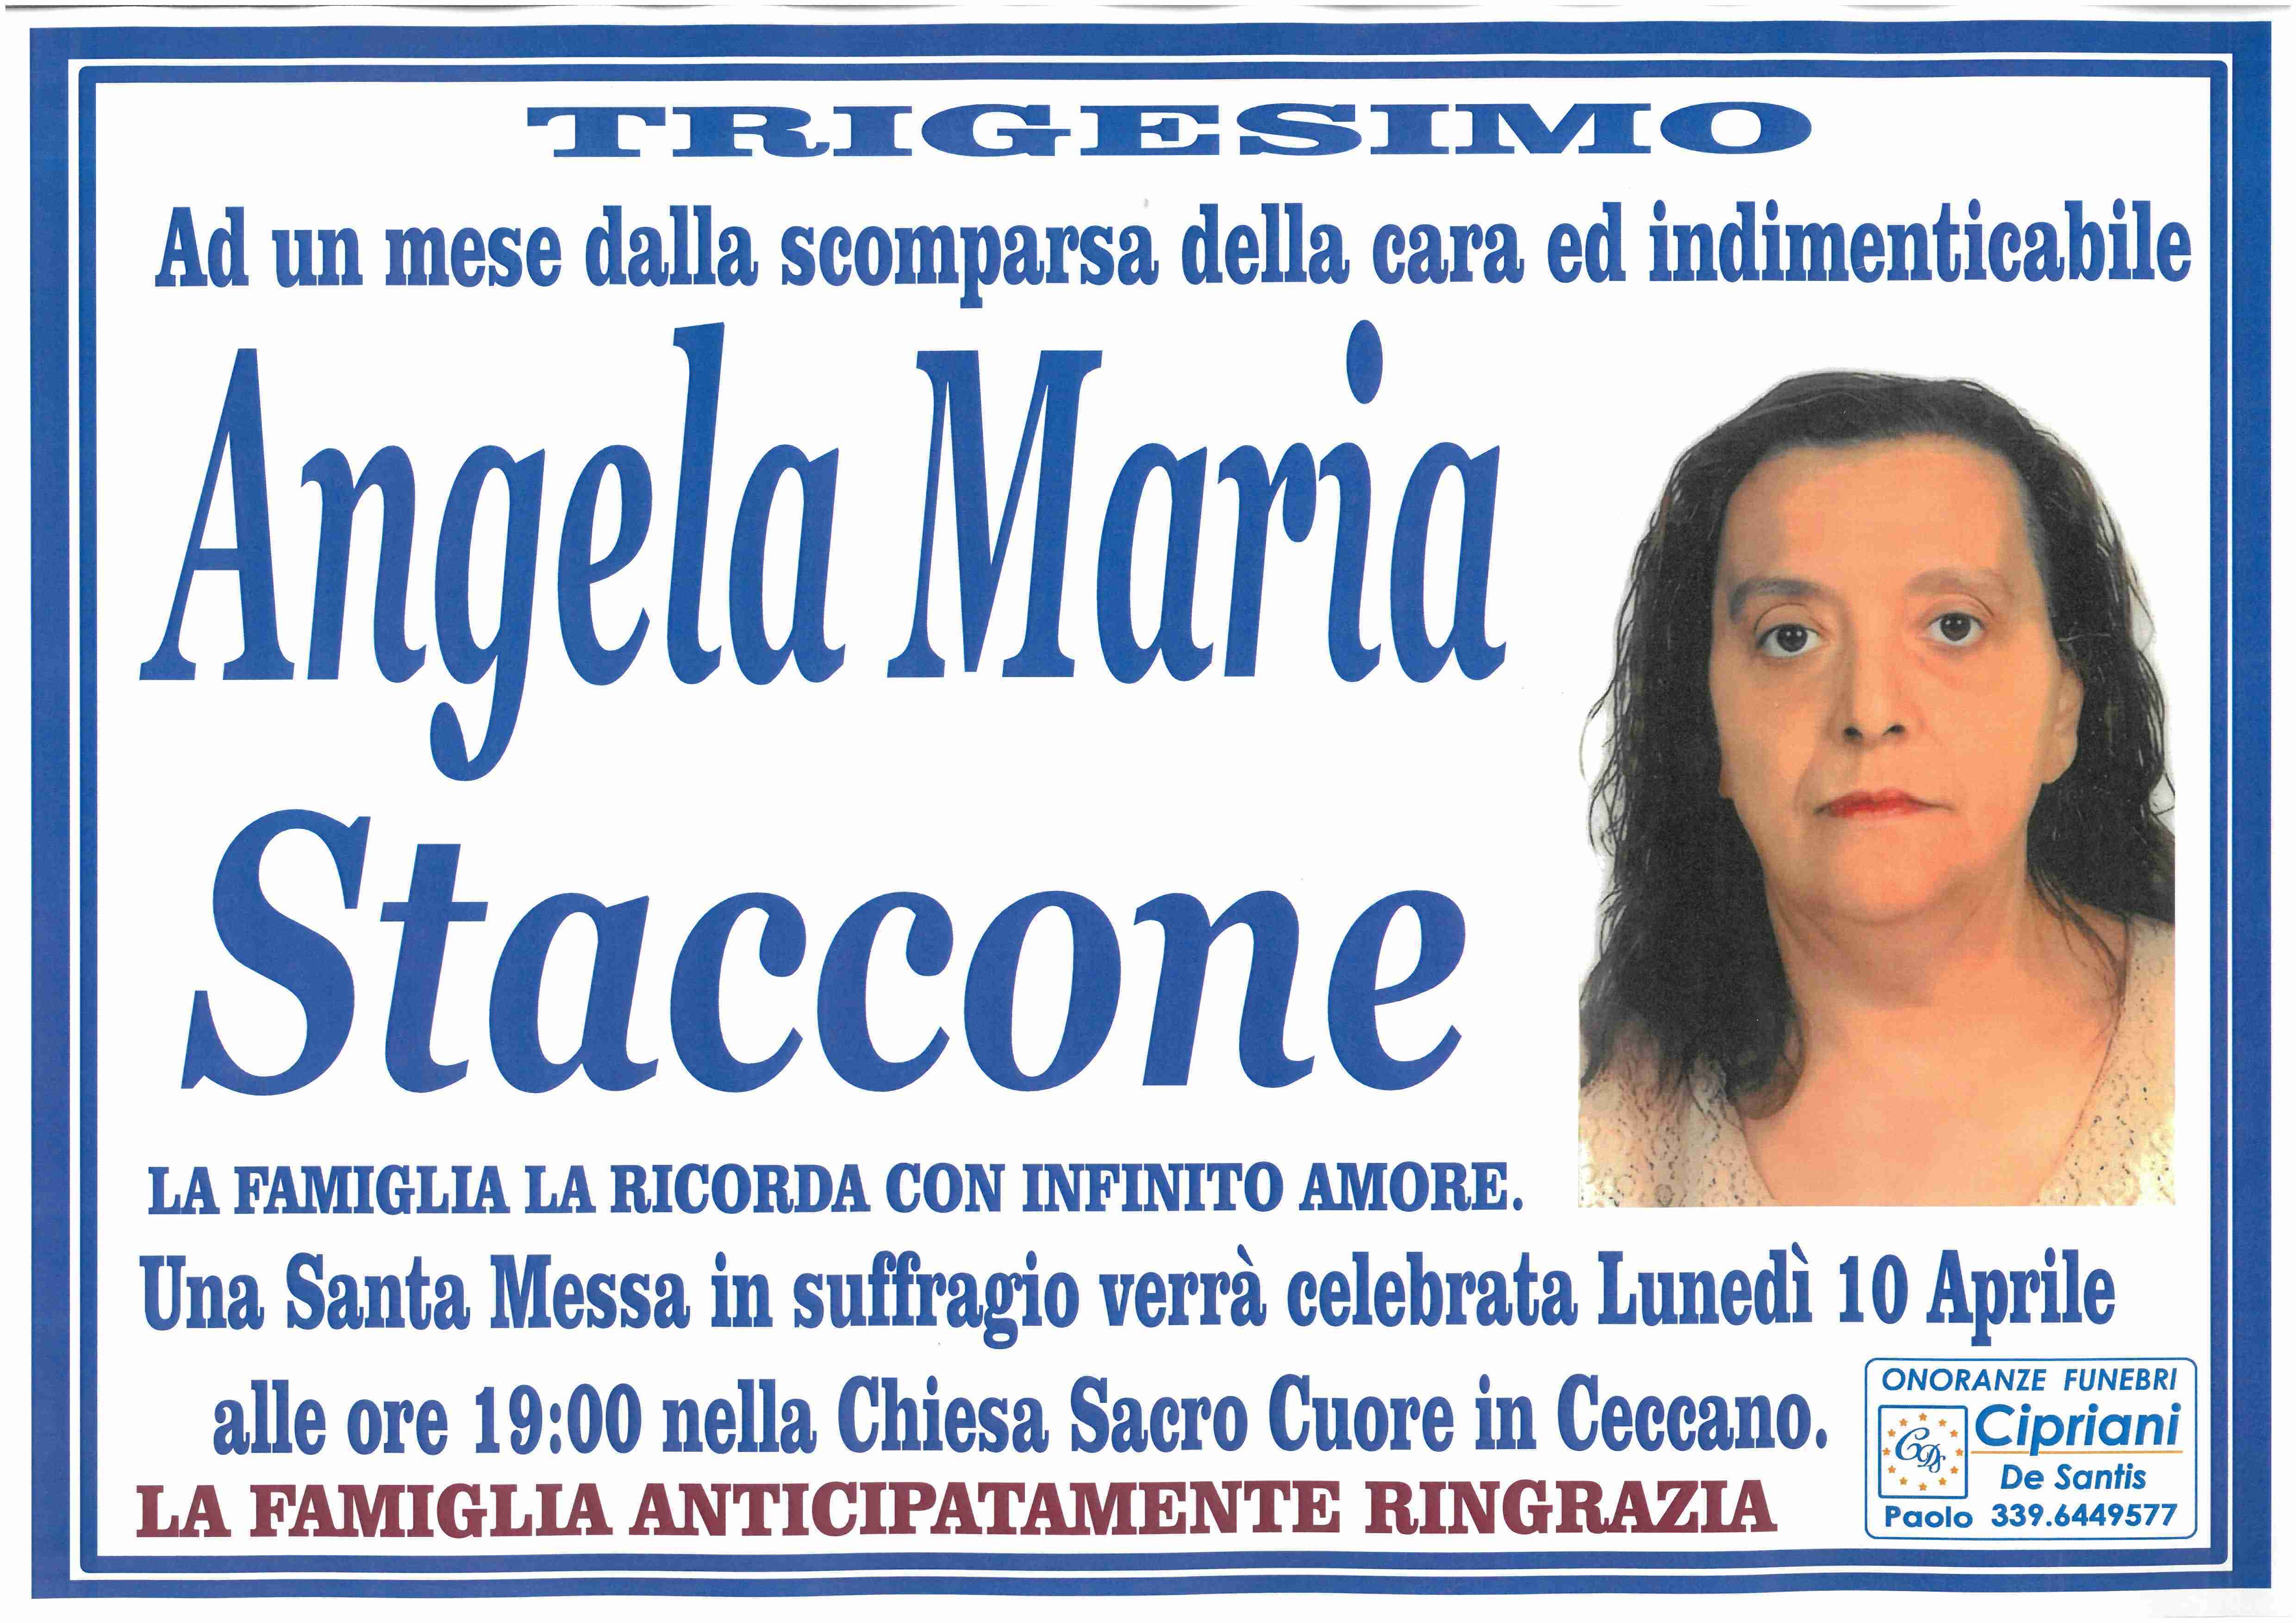 Angela Maria Staccone